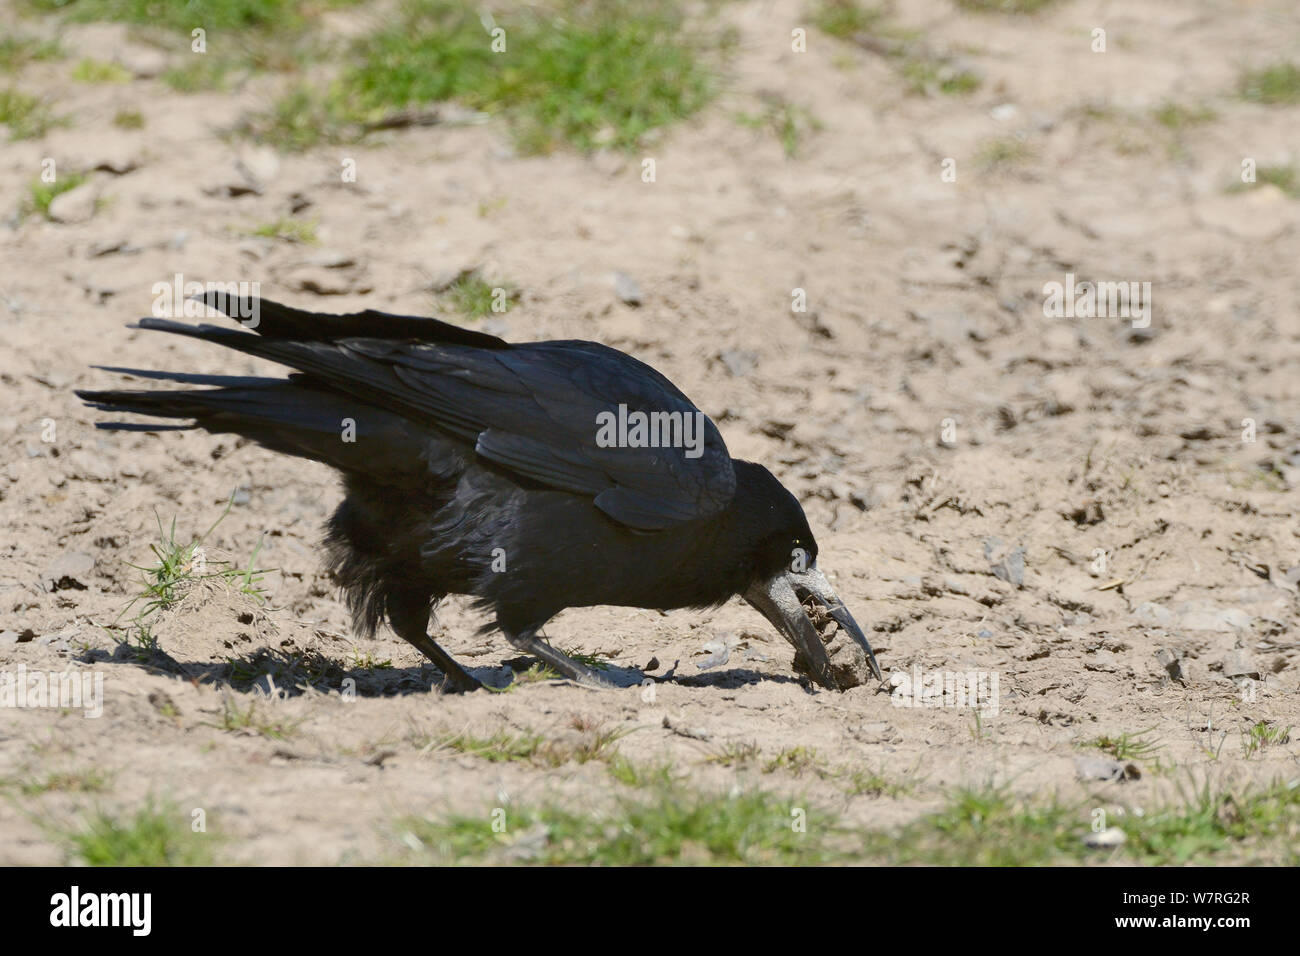 Saatkrähe (Corvus frugilegus) Sammeln von Erde in seinen Schnabel zur Auskleidung von seinem Nest, Gloucestershire, UK, Mai. Stockfoto